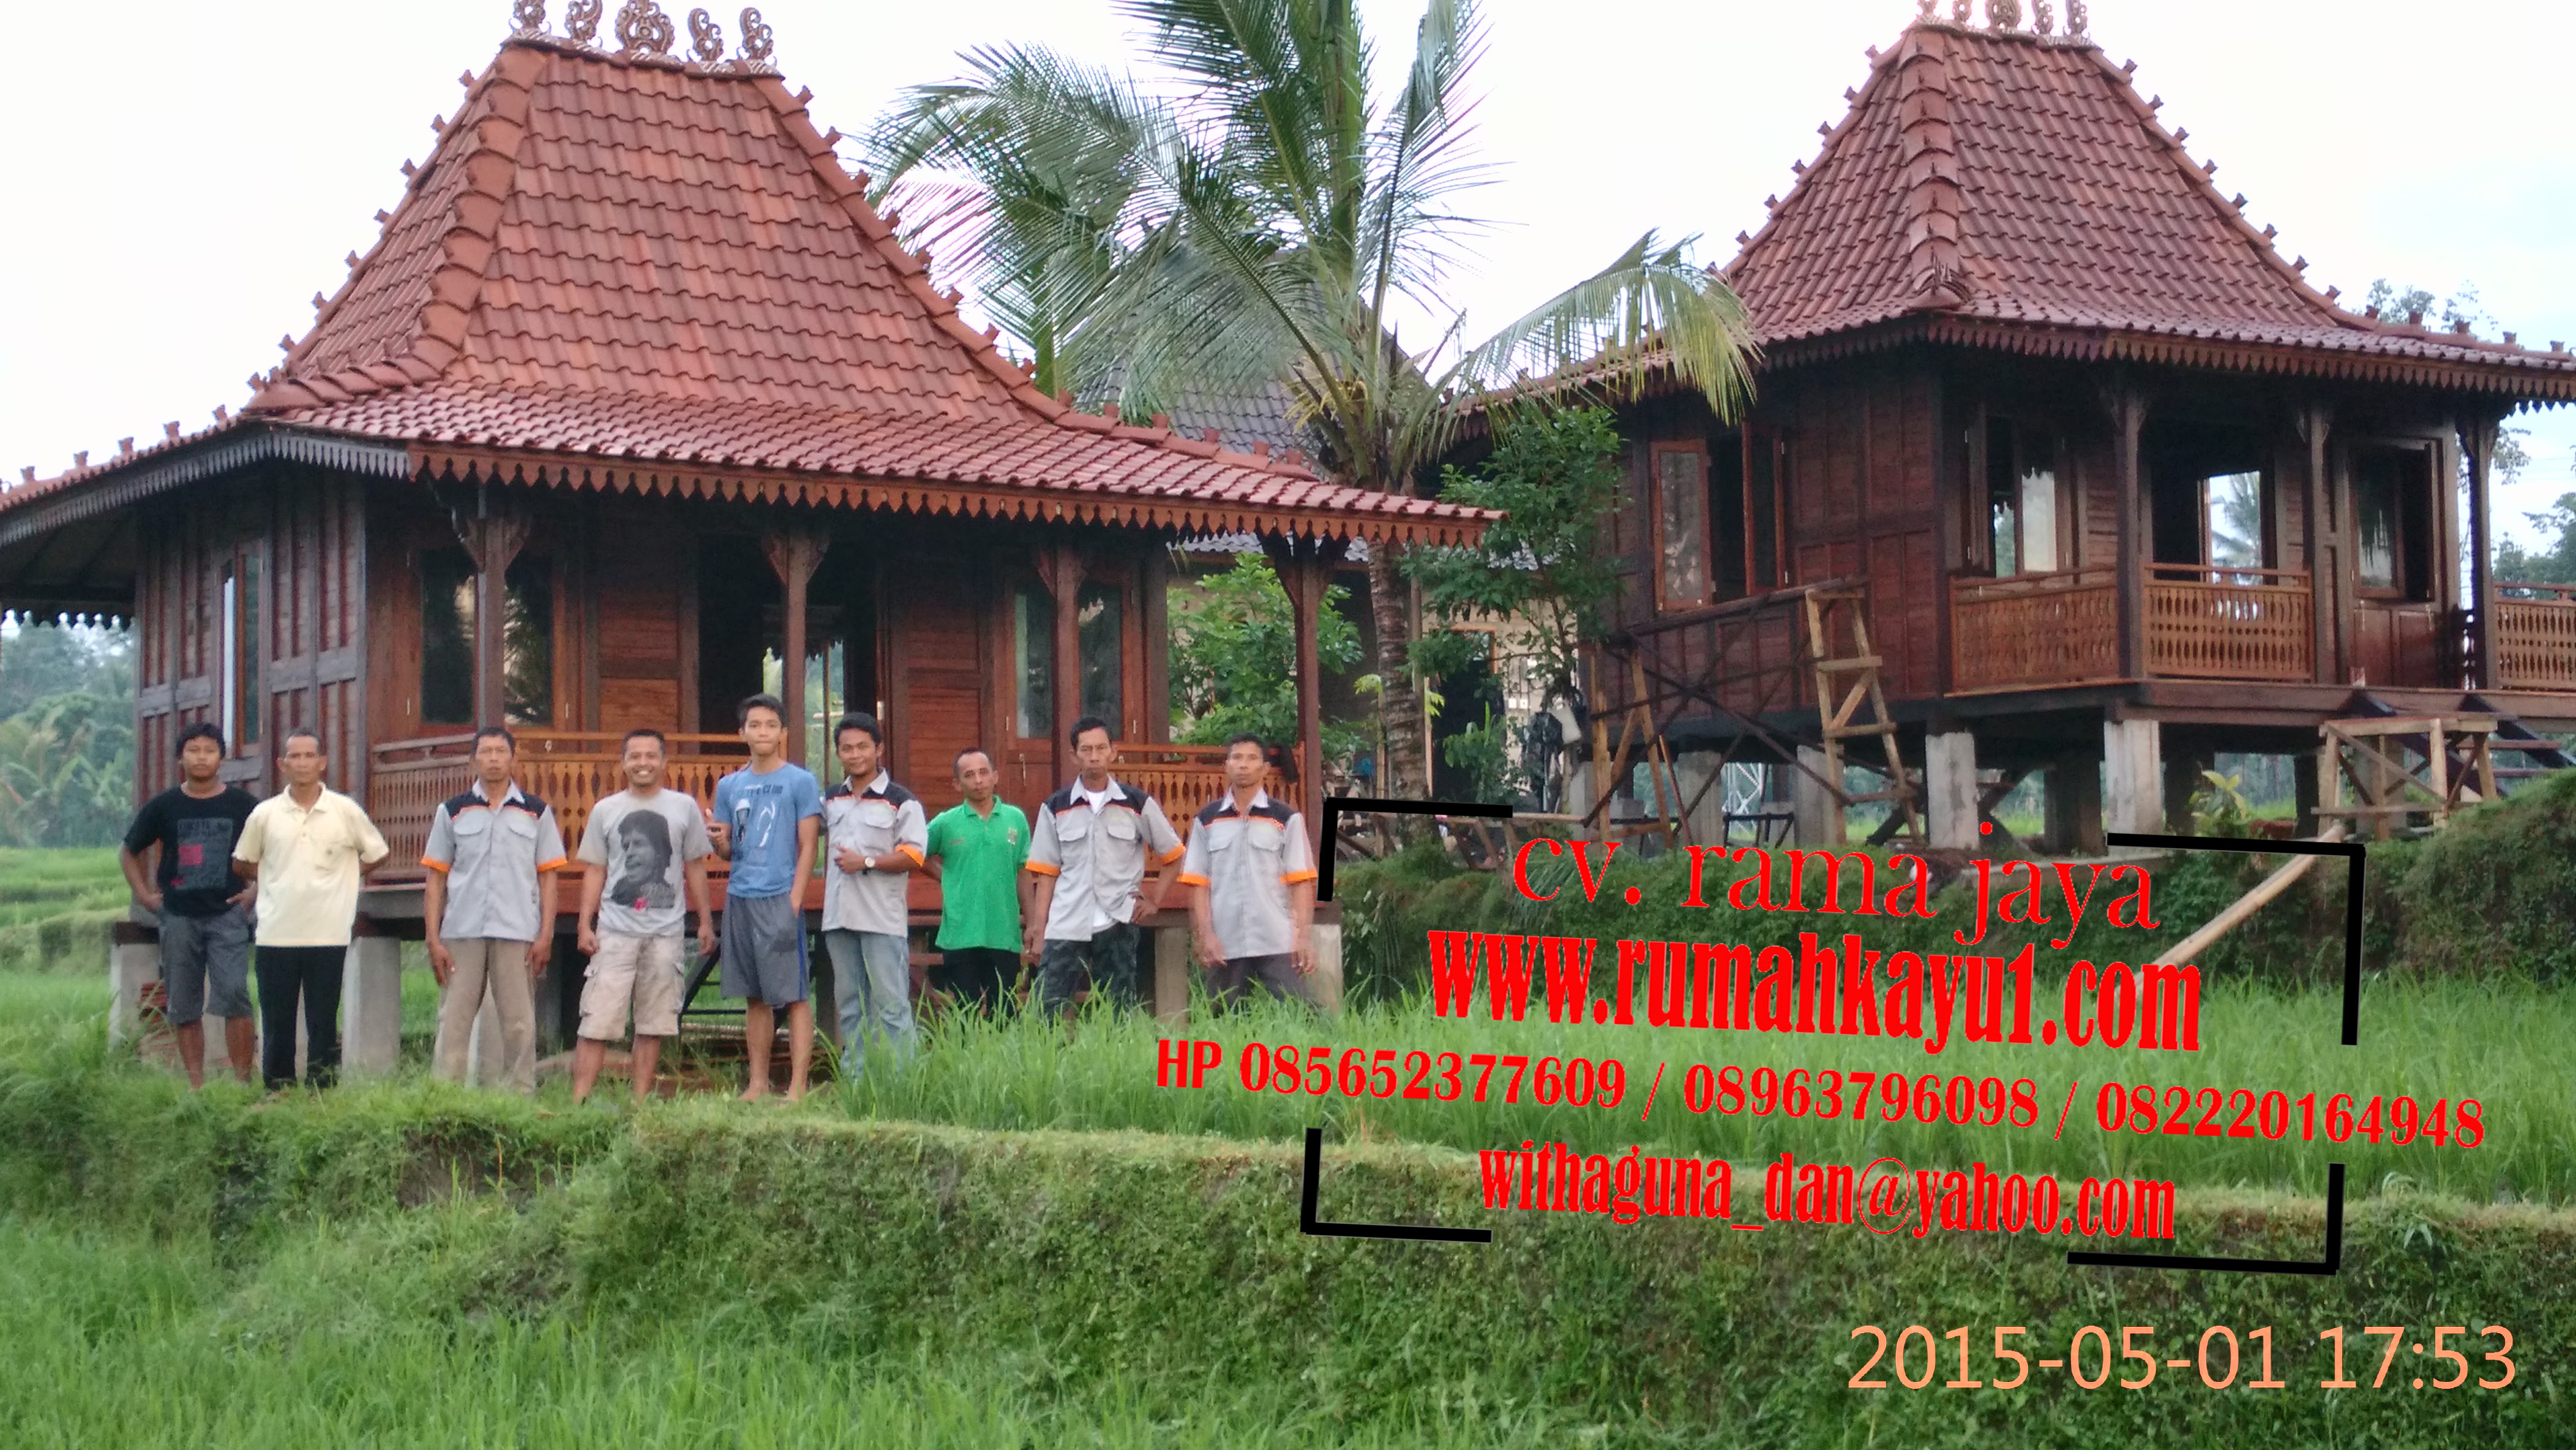 Download 50 Desain Rumah Kayu Bali Terupdate Komposisi Rumah